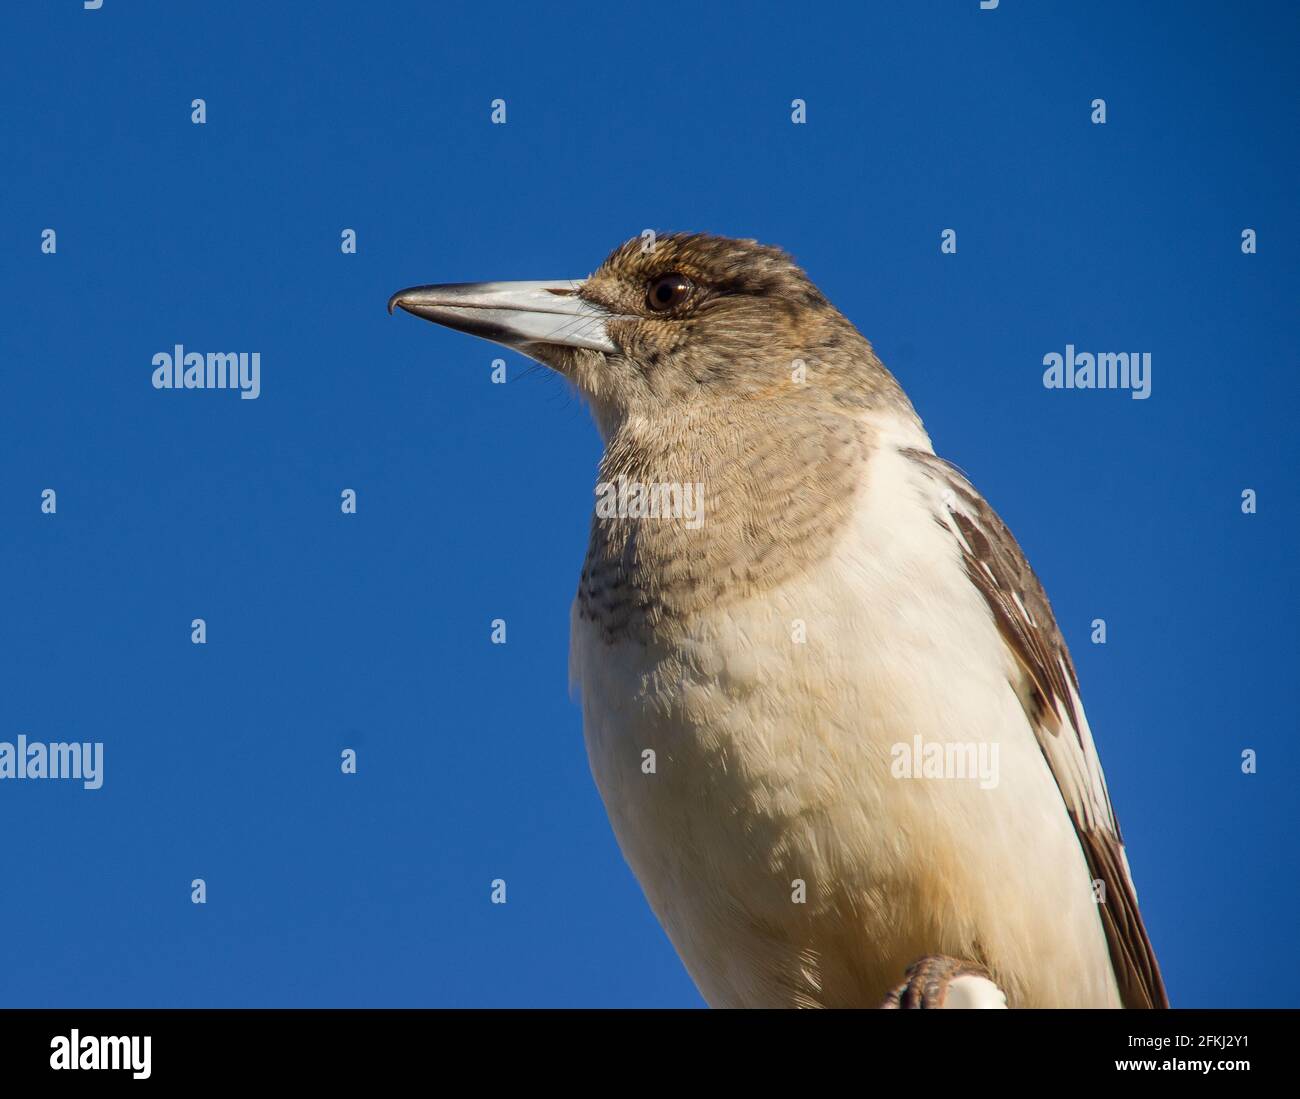 Primo piano del giovane Pied Butcherbird, Cracticus nigrogularis, arroccato sul tetto a Queensland, Australia. Sfondo di cielo invernale blu chiaro. Spazio di copia Foto Stock